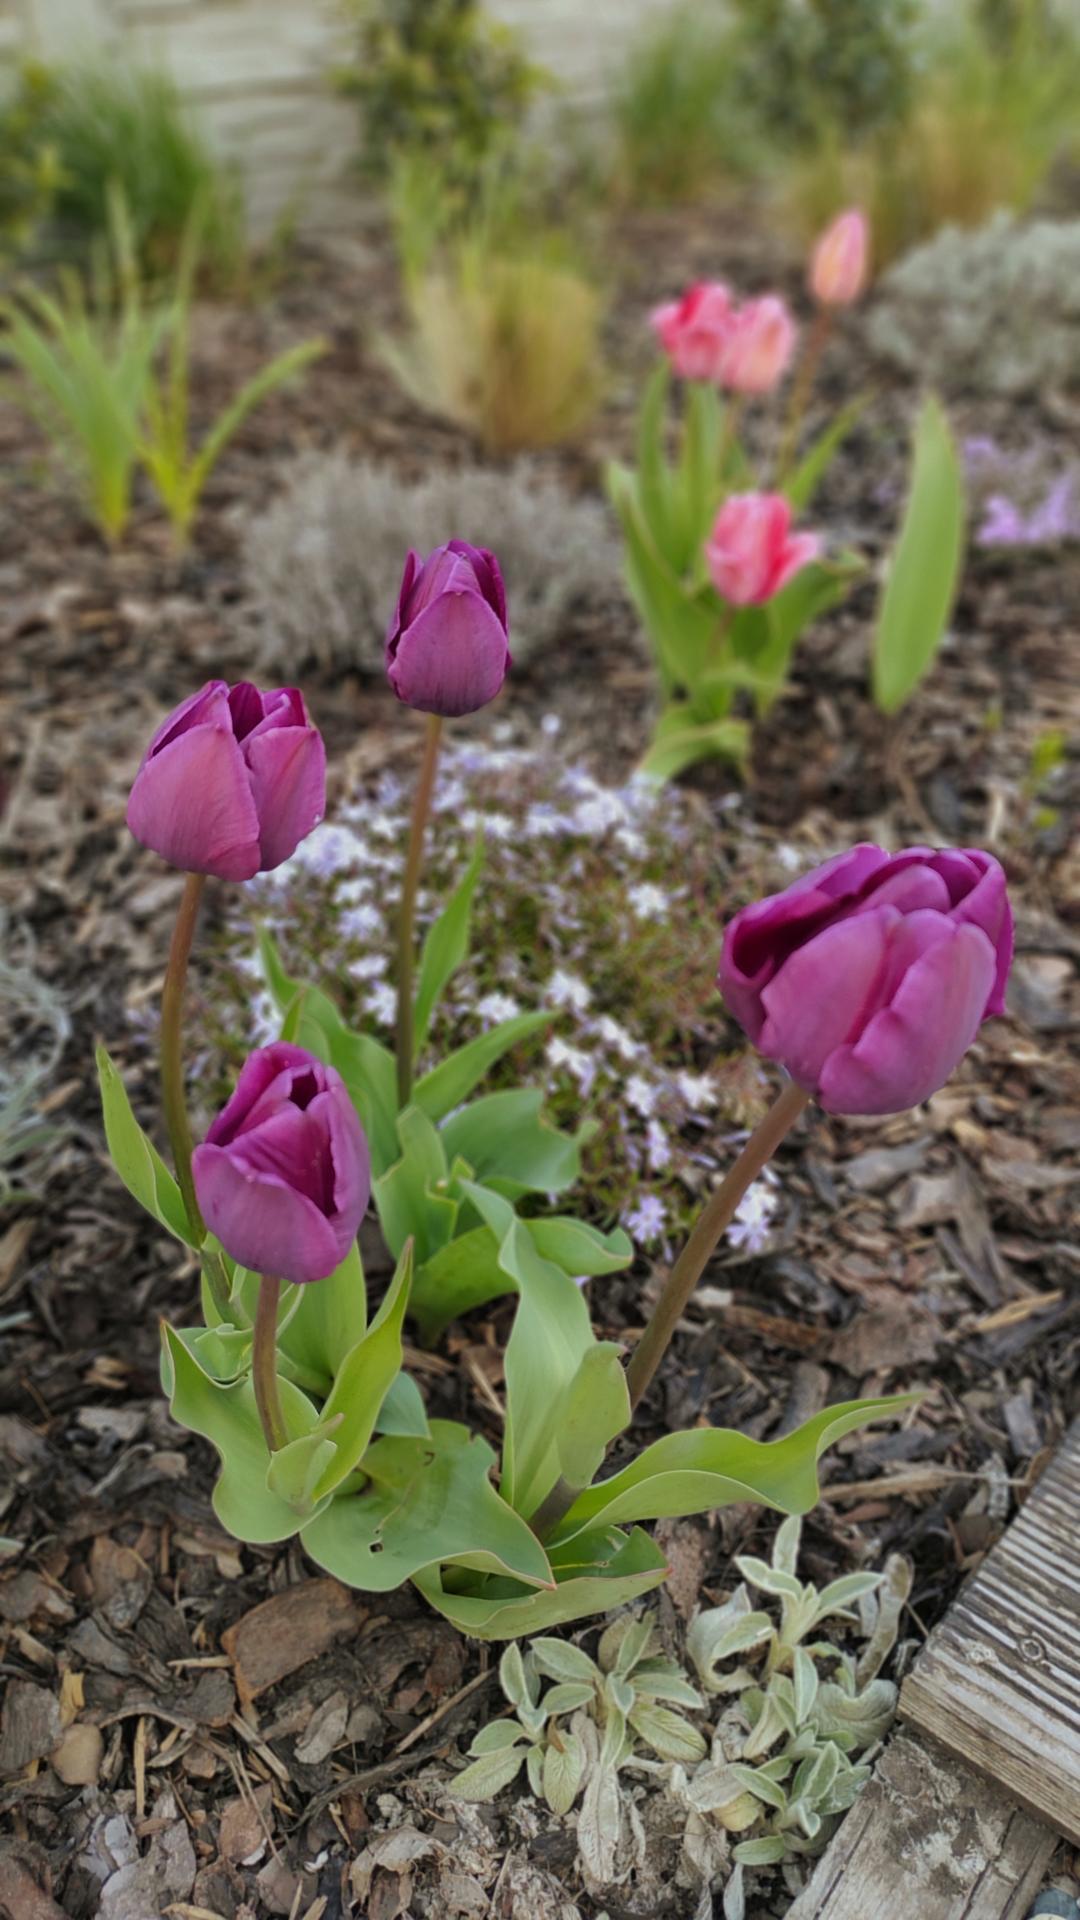 U nás po 5-ti letech - Tulipány letos nějaké malé, nízké 🤔asi málo sluníčka 